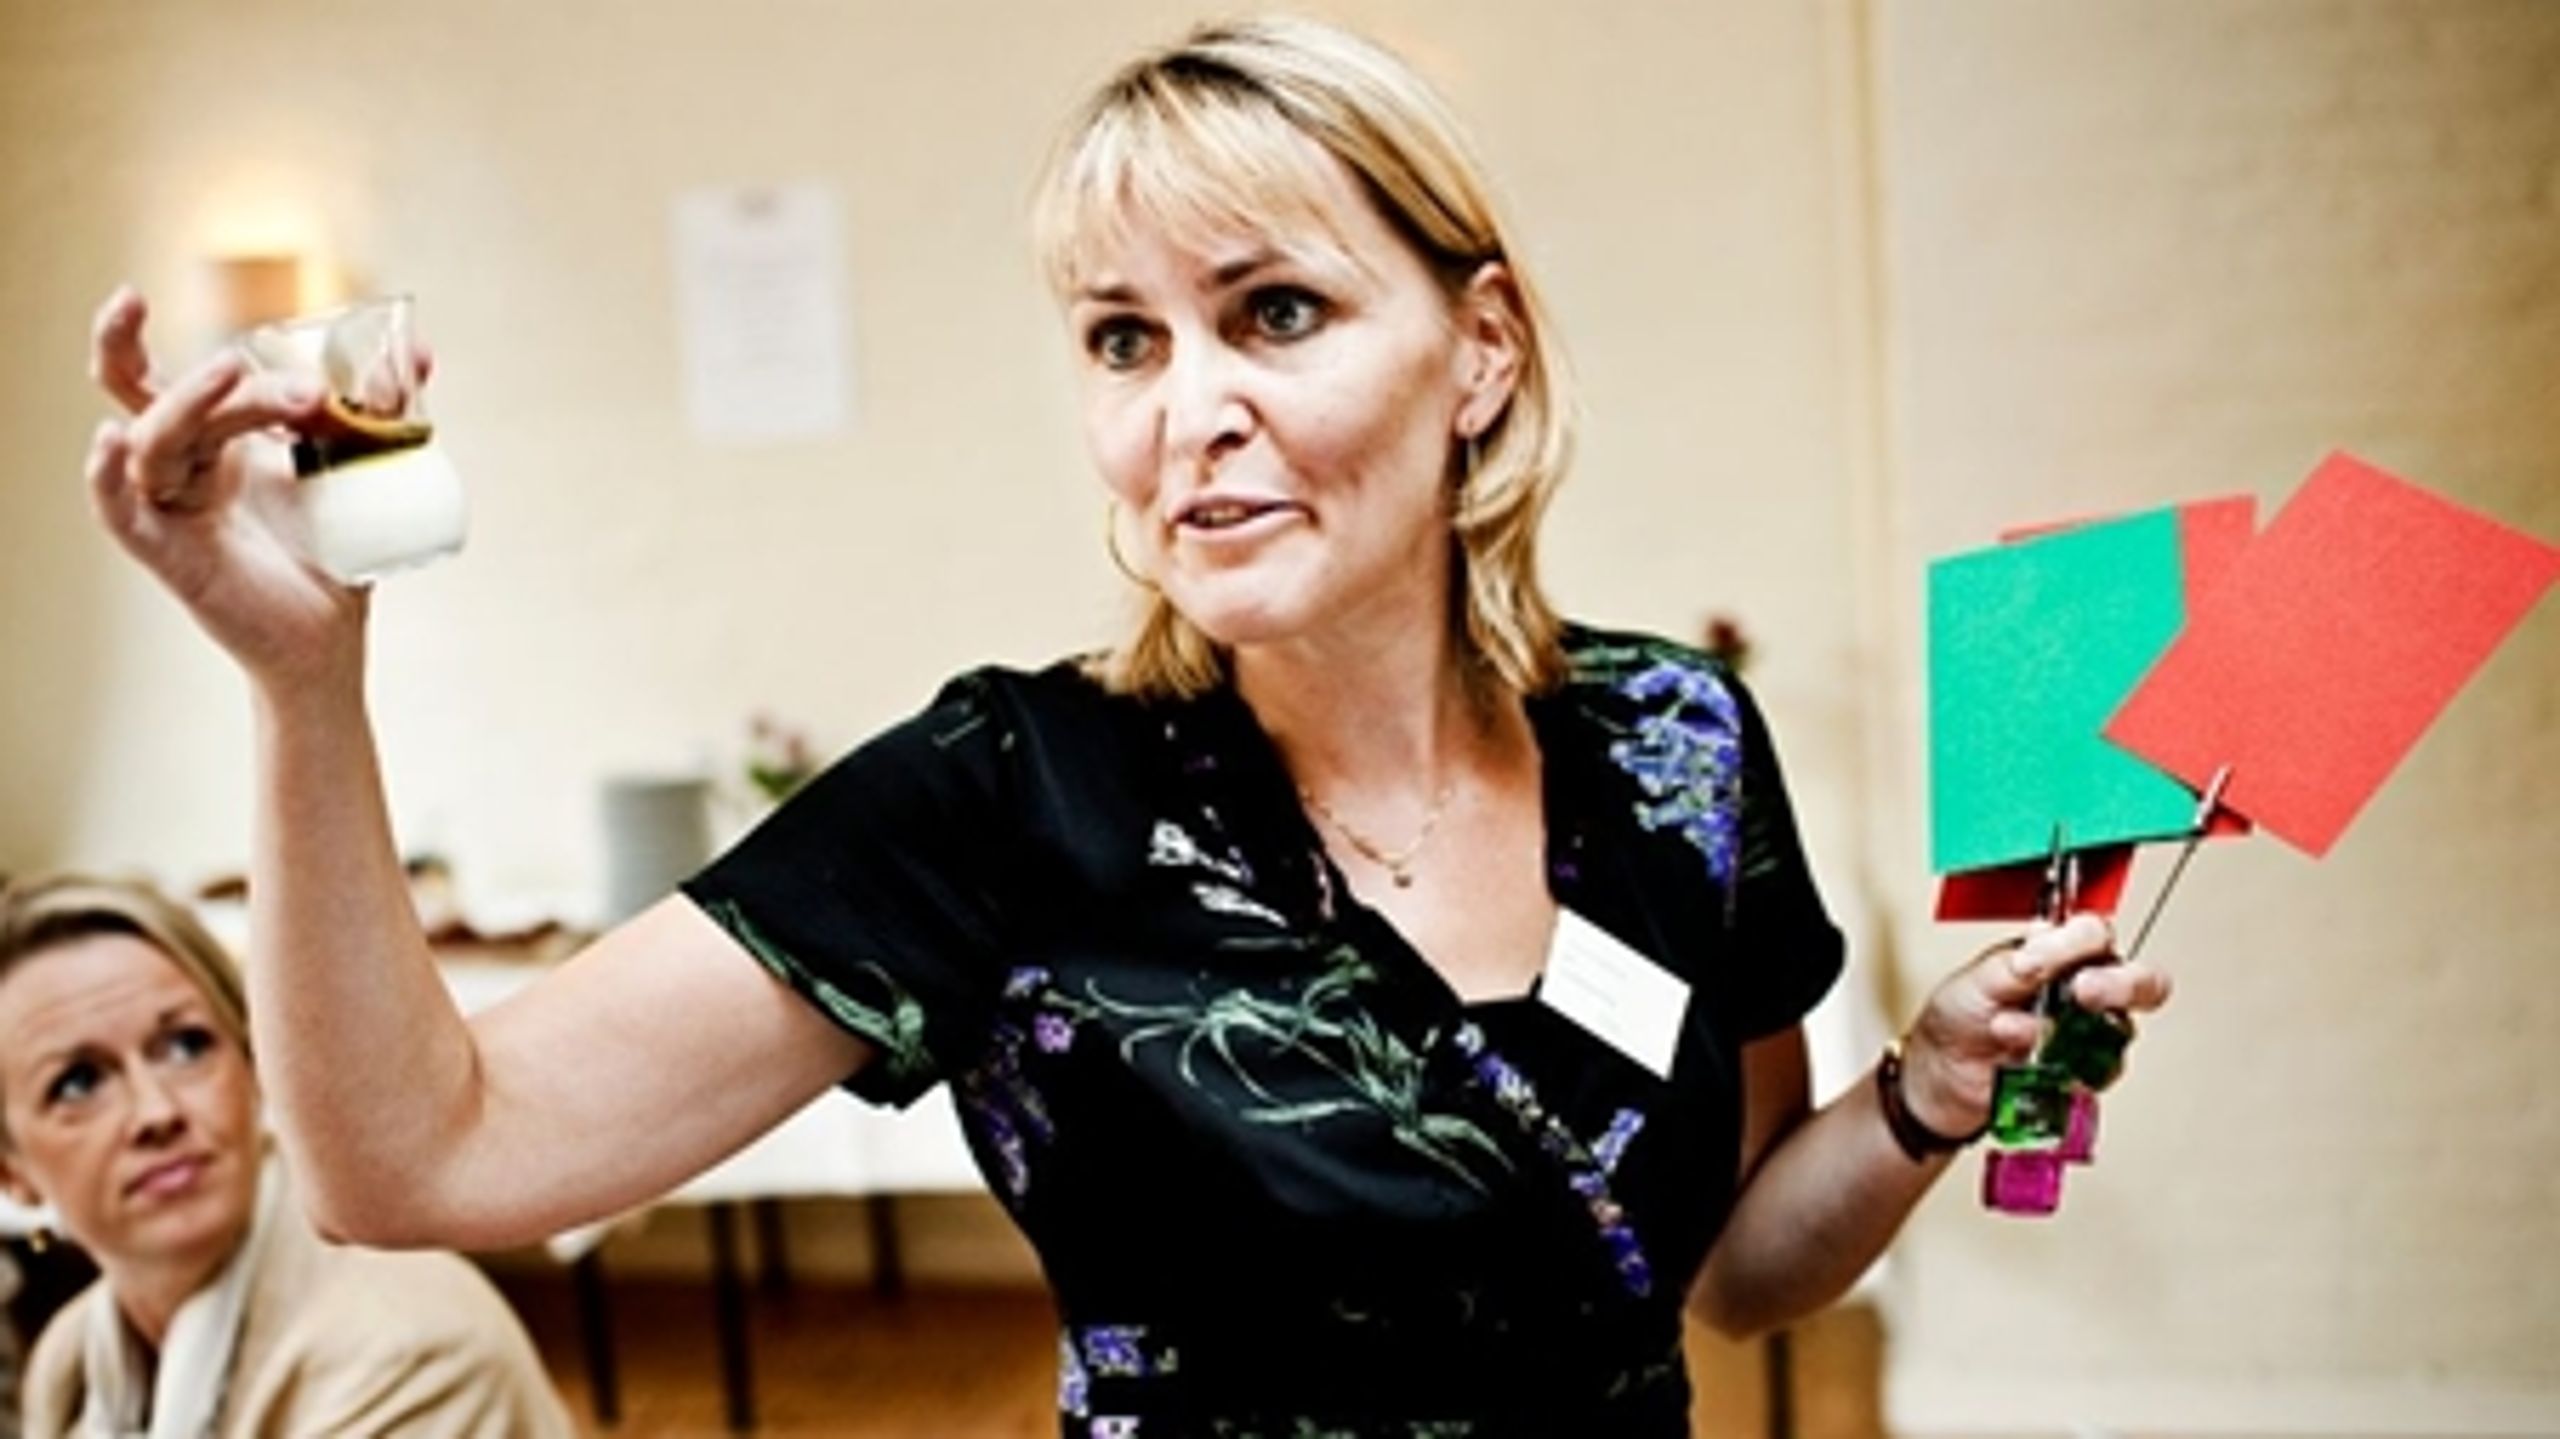 Europaparlamentariker Christel Schaldemose (S) uddeler røde og grønne flag for at vise, hvilke fødevarer der i hendes øjne bør kunne anprises. Den sukkerholdige yoghurt fik et rødt, mens en frugtskål som det eneste fik et grønt.